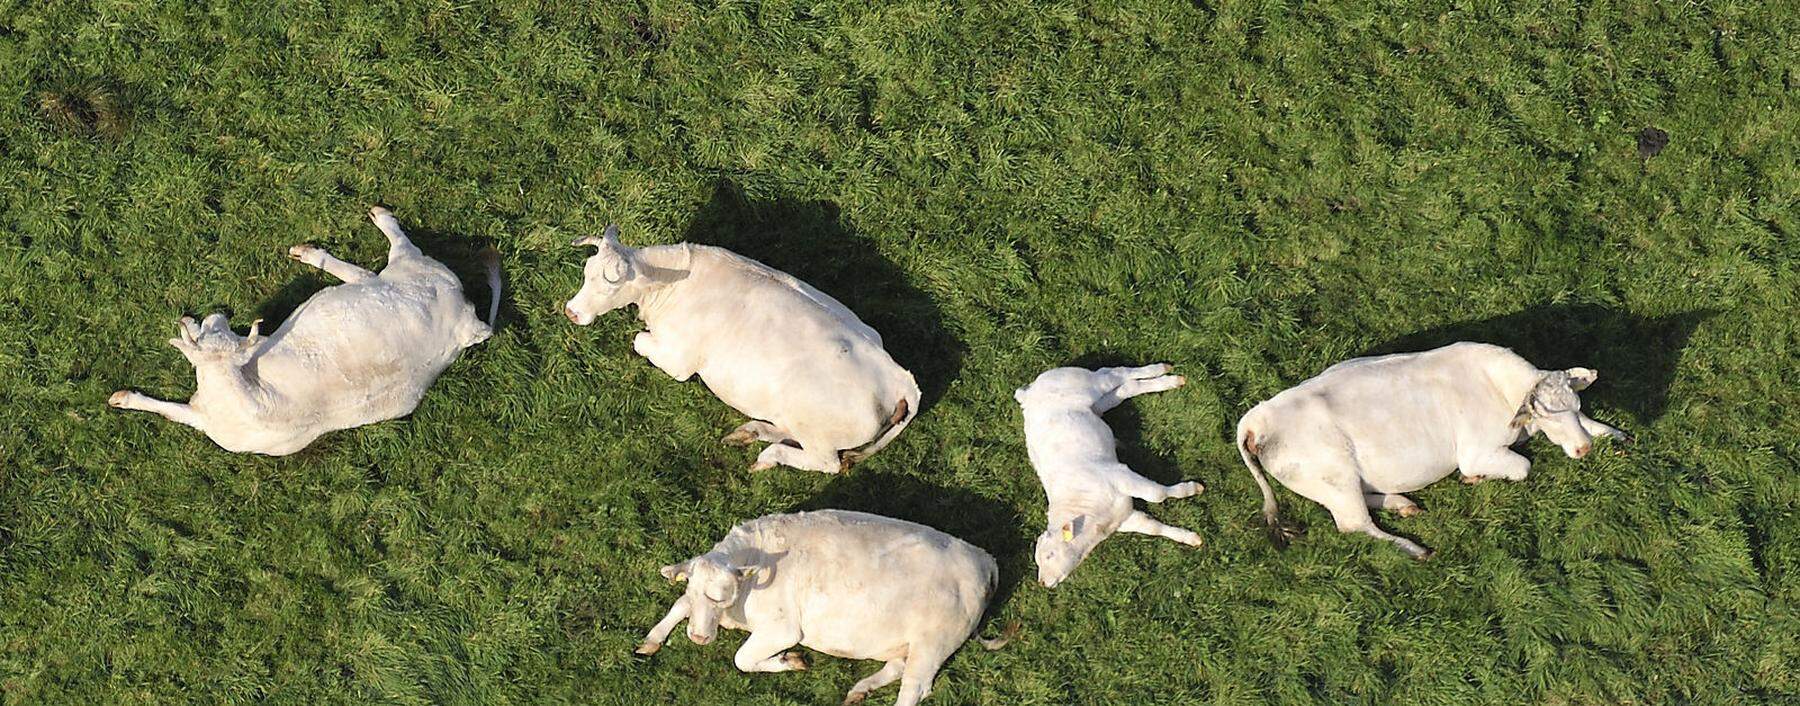 An einem Tag könnten diese fünf Kühe bei der Verdauung pflanzlicher Nahrung bis zu 1500 Liter Methan ausstoßen.